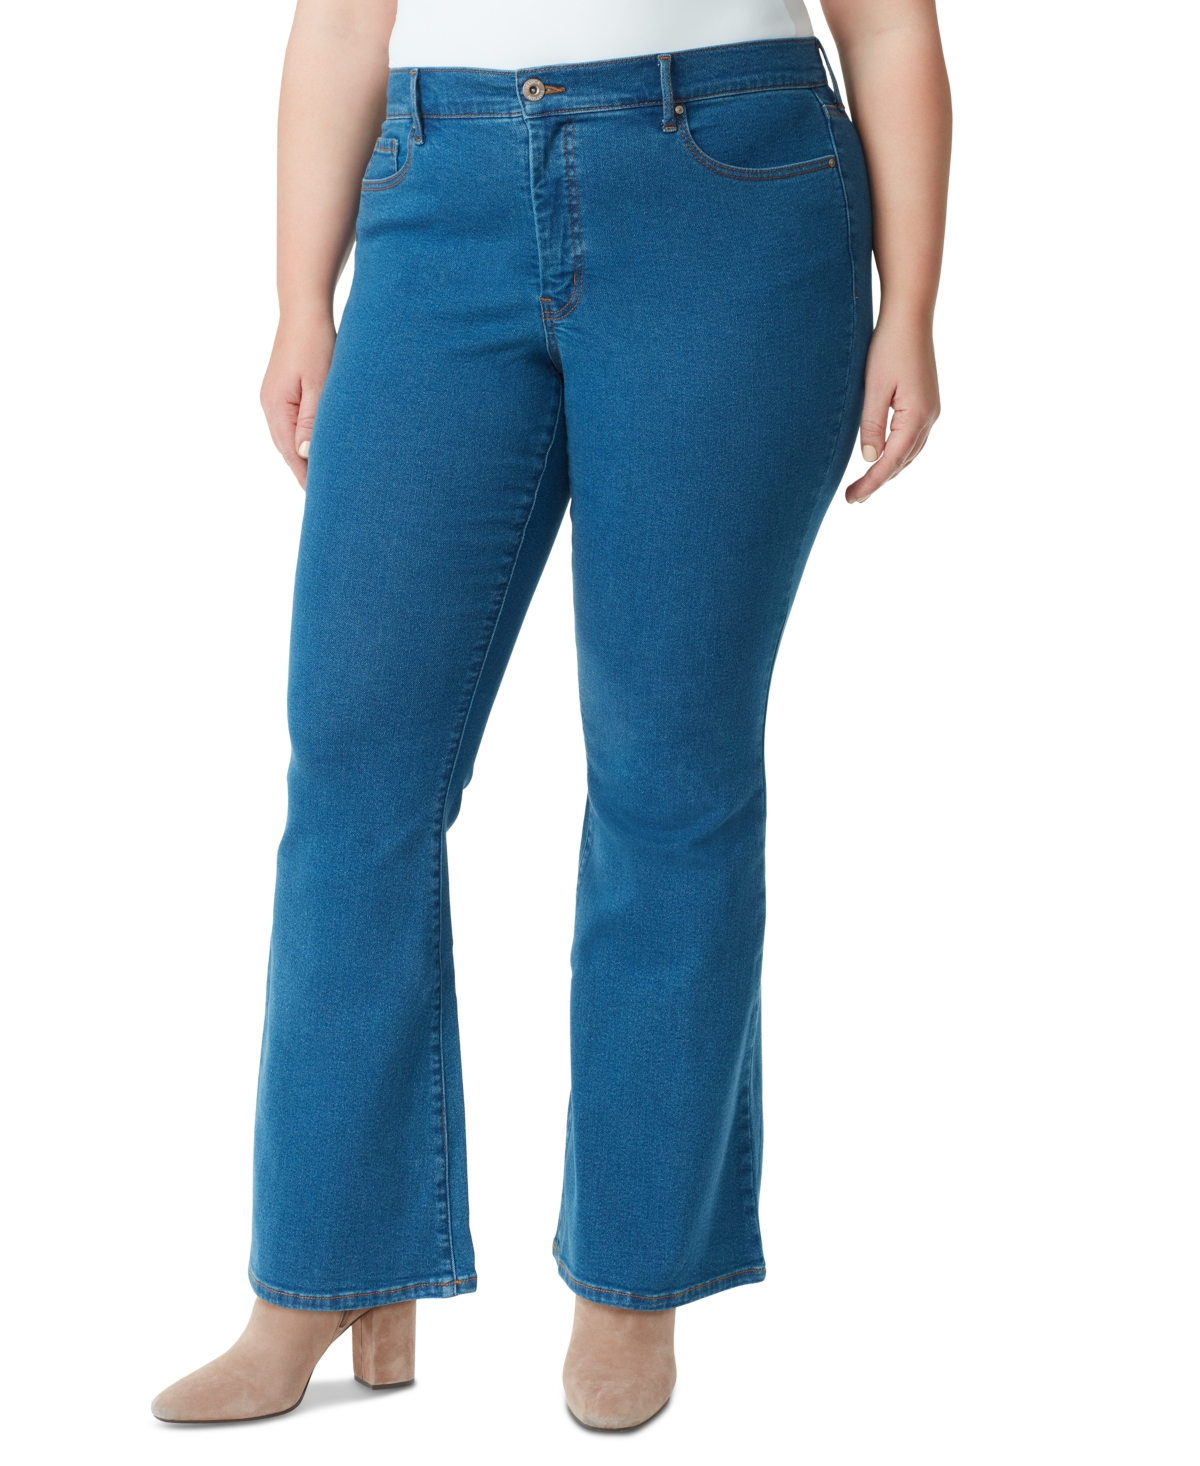 Jessica Simpson Shop Womens Pants